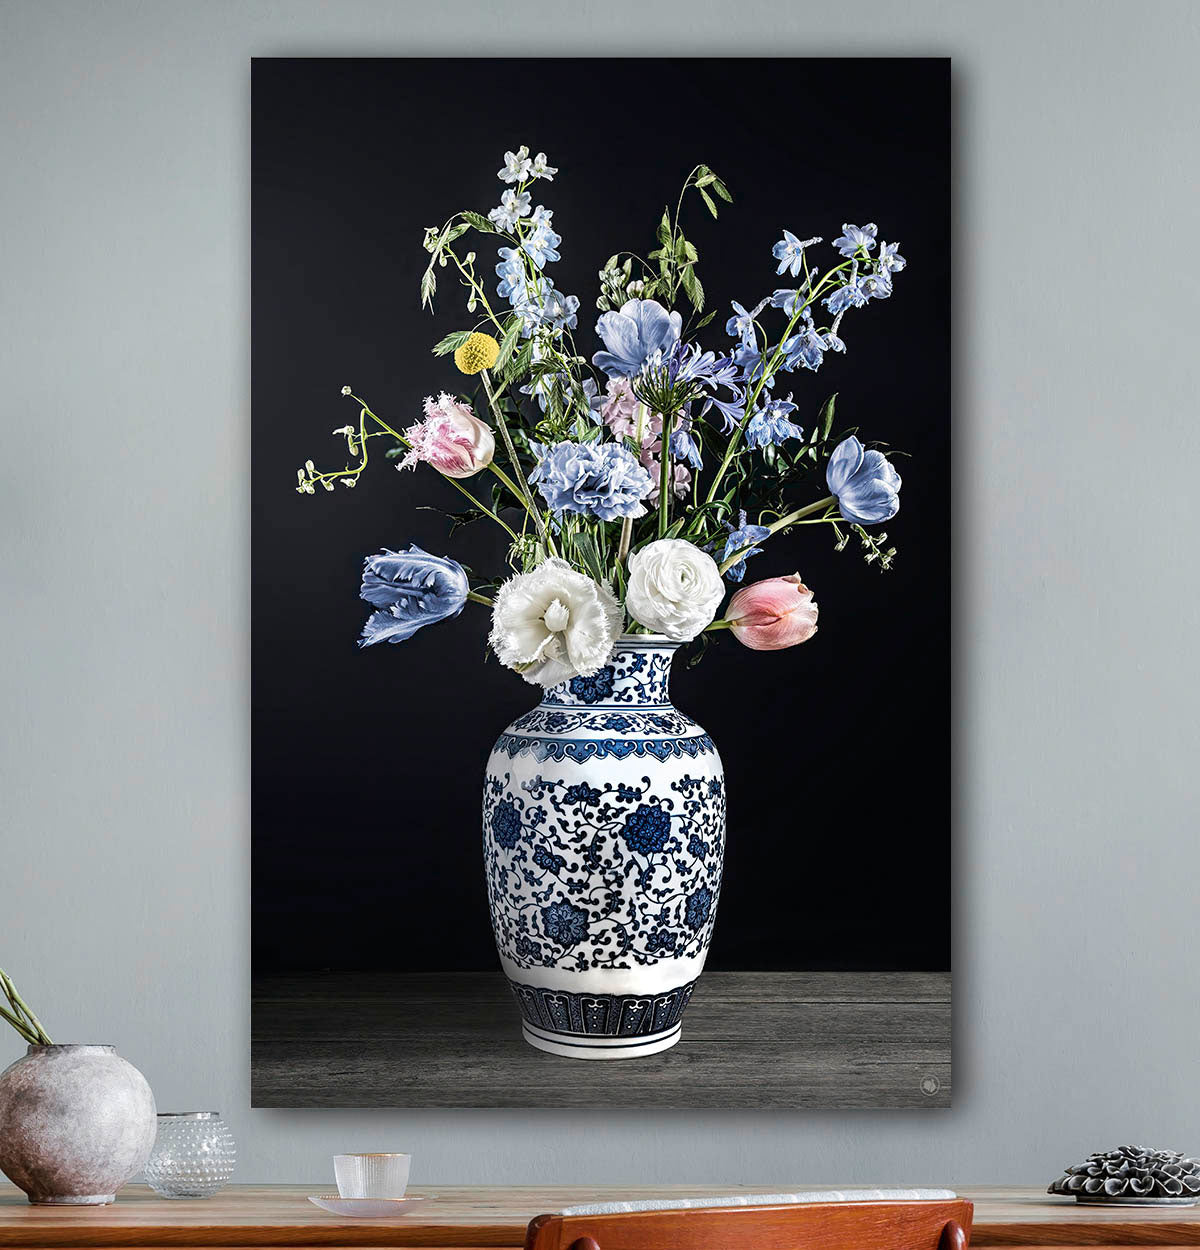 Schilderij met lichtblauwe en witte bloemen met een donkere achtergrond